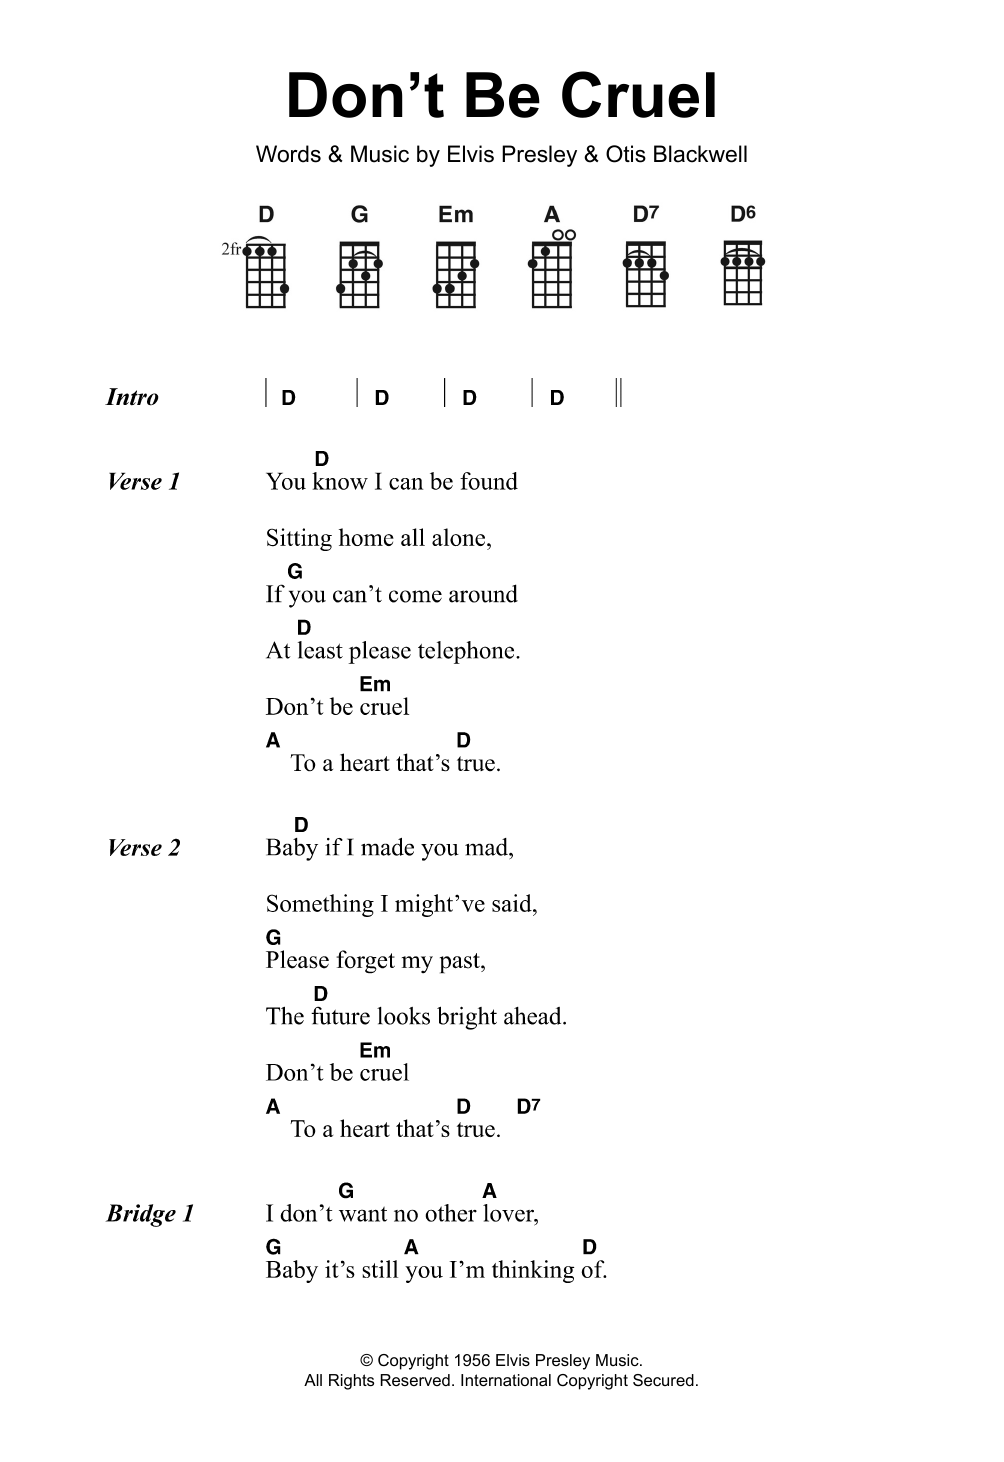 Elvis Presley Don't Be Cruel Sheet Music Notes & Chords for Ukulele Lyrics & Chords - Download or Print PDF